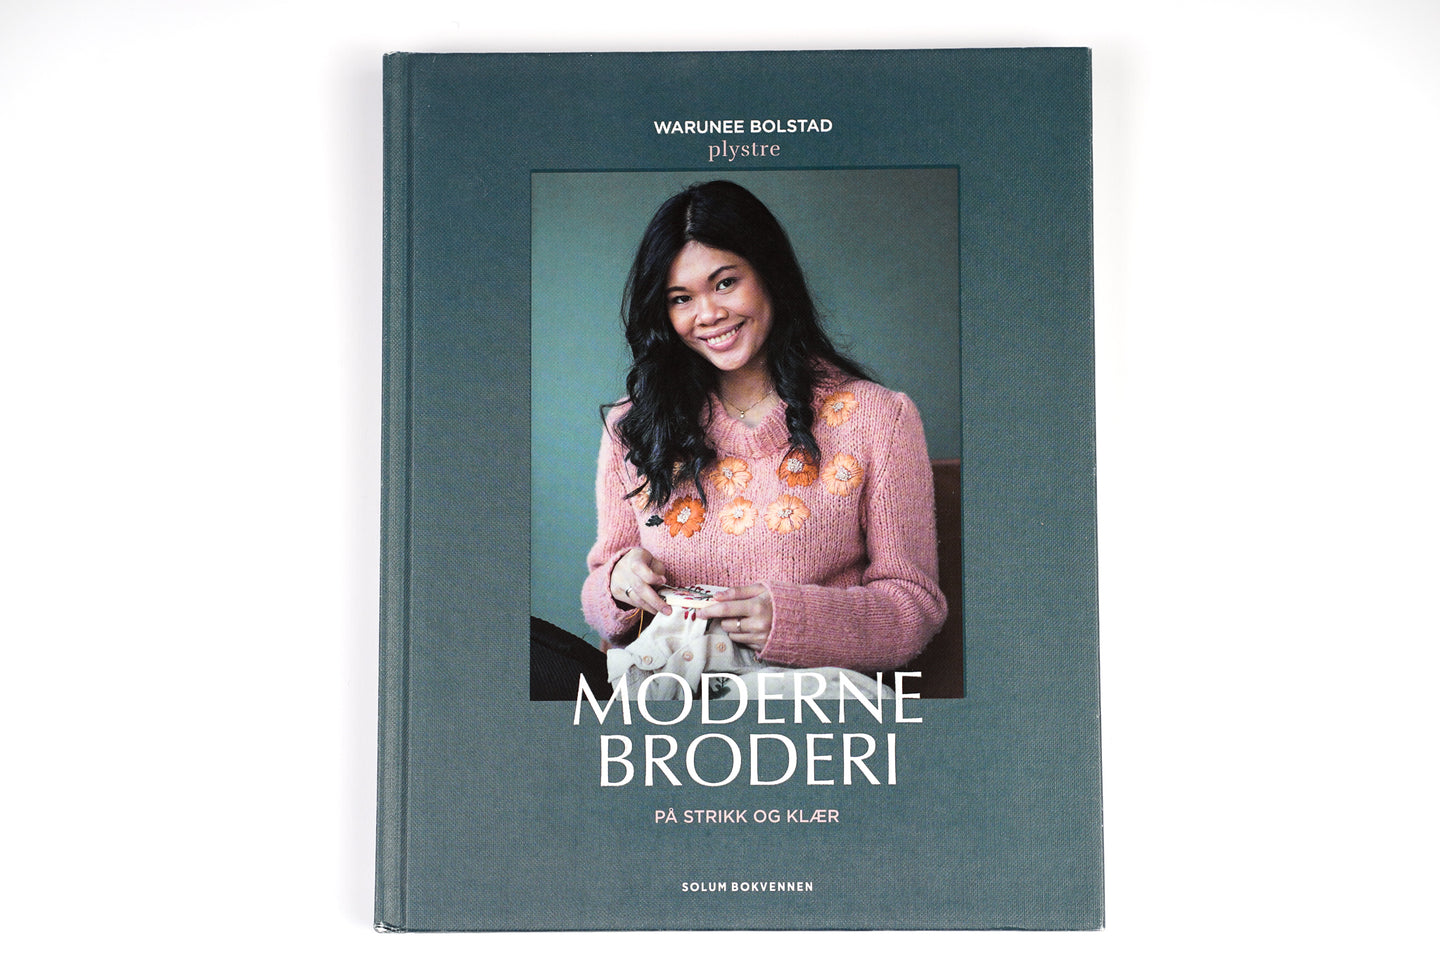 Bok, Moderne Broderi på strikk og klær av Warunee Bolstad - Plystre (norsk)